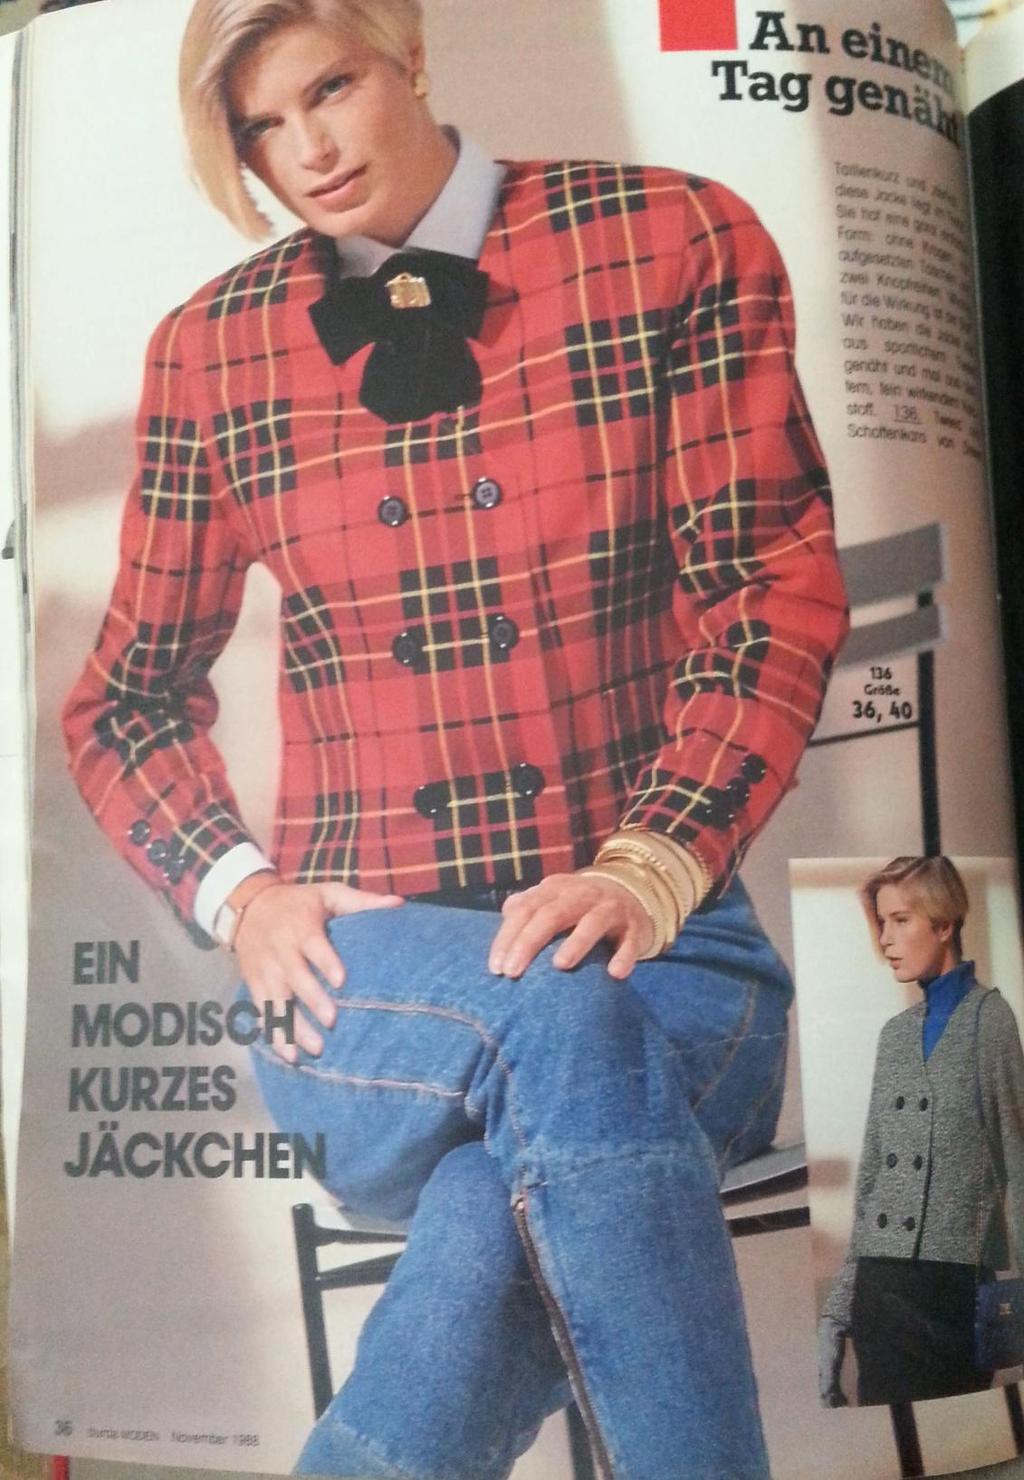 Kaynak: Burda Moden Dergisi 1988.Kasım Ayı Sayısı. Şekil 4. 2. 10: Aenne Burda. Kasım.1988 Burda dergisinde, bir günde dikilebilecek kolay kıyafetlerin sunumu sağlanmıştır.